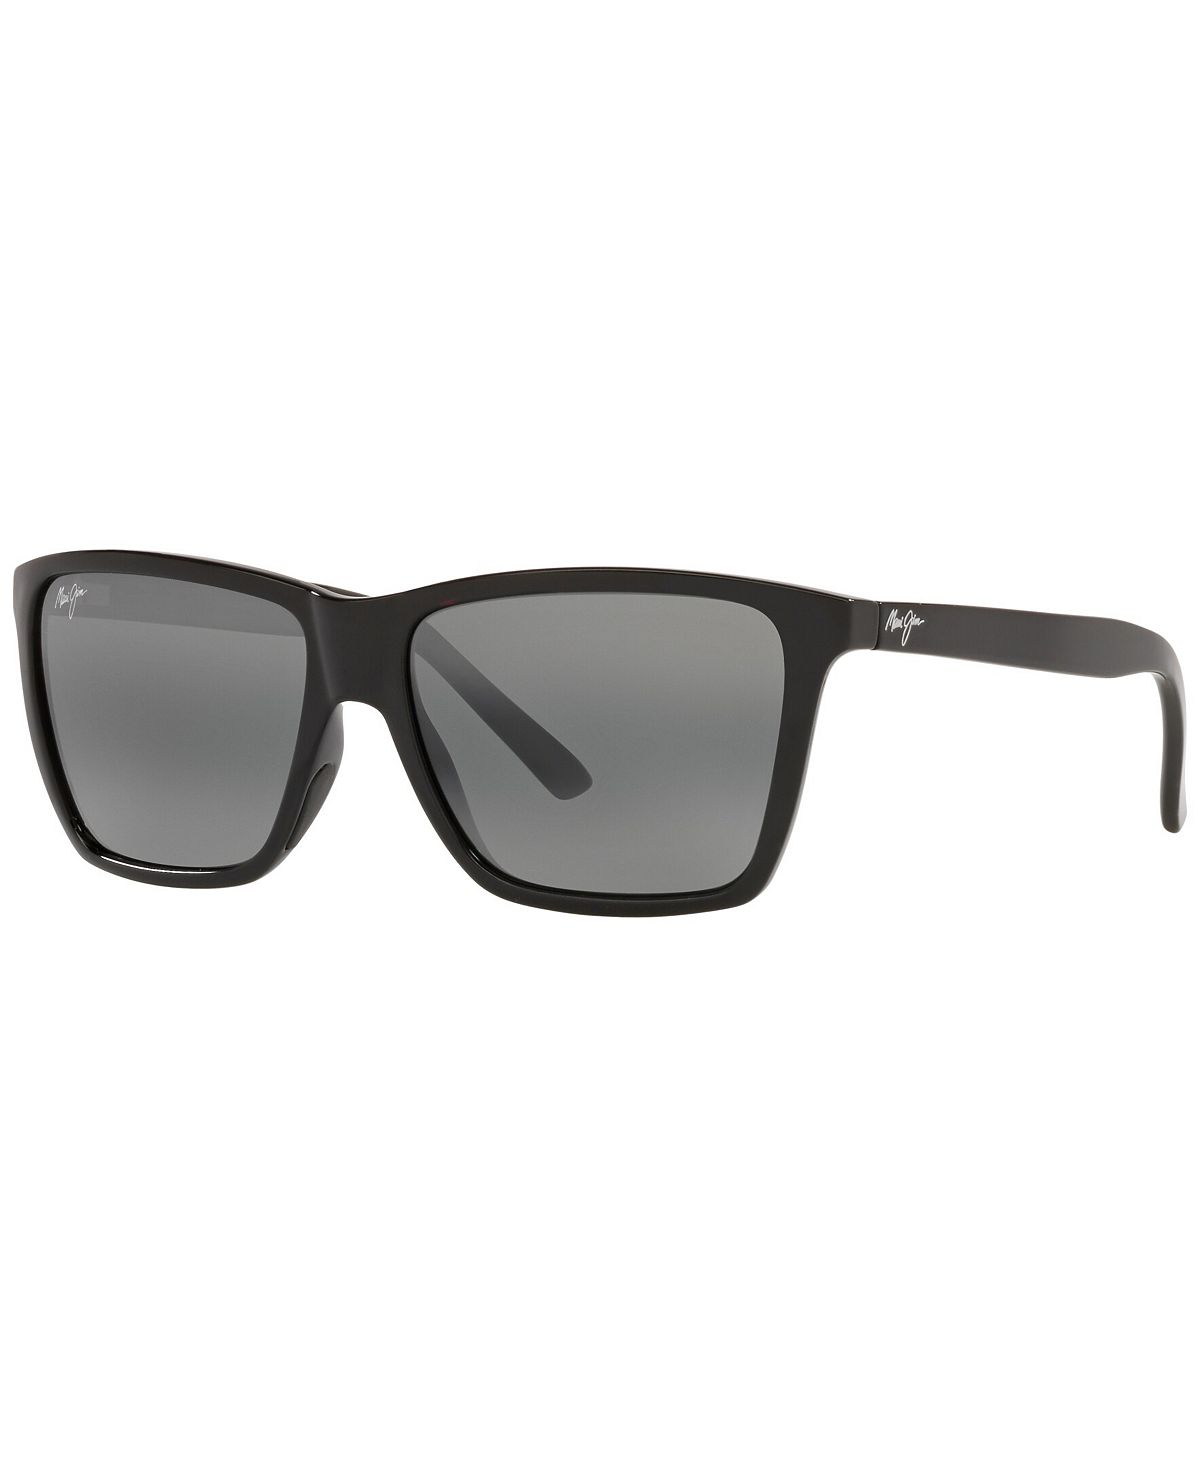 Мужские поляризованные солнцезащитные очки, MJ000672 Cruzem 57 Maui Jim цена и фото